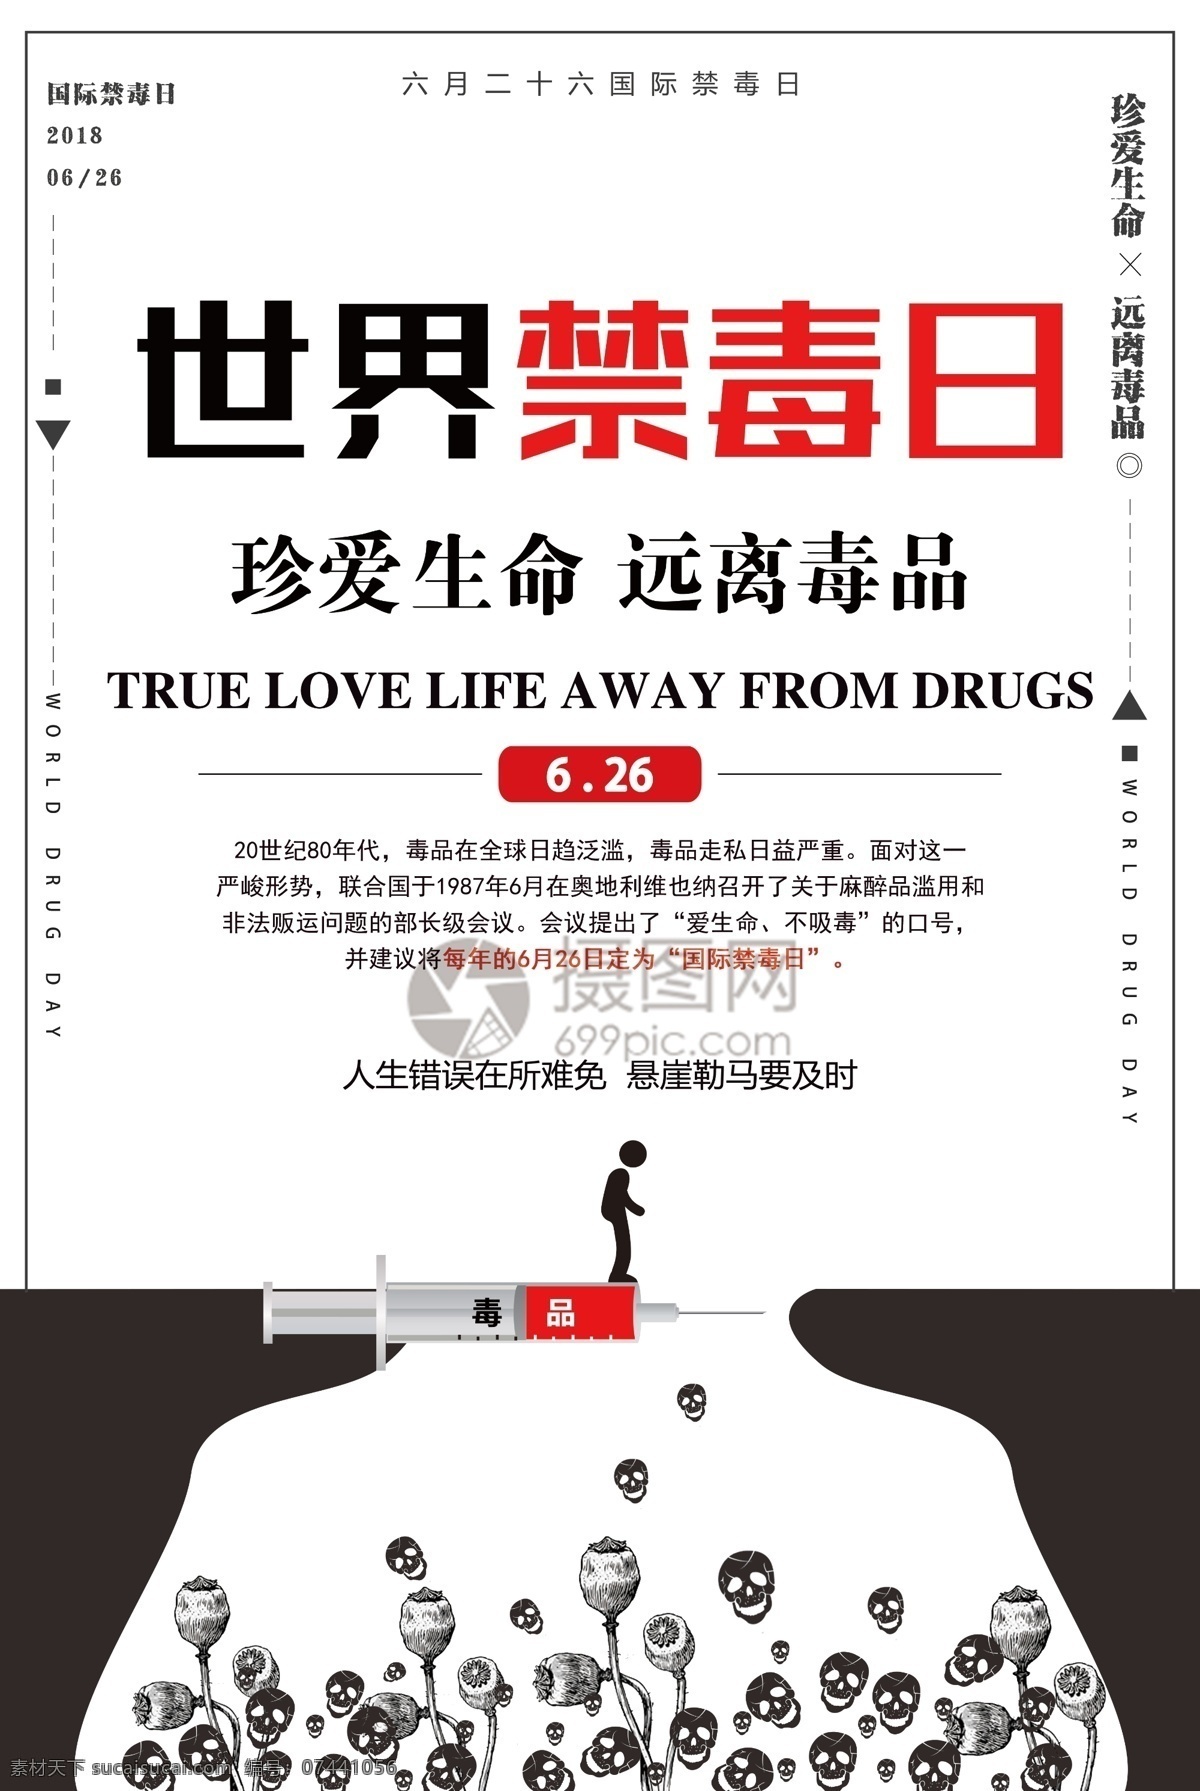 世界 禁毒日 海报 世界禁毒日 毒品 珍爱生命 远离毒品 拒绝毒品 健康 公益海报